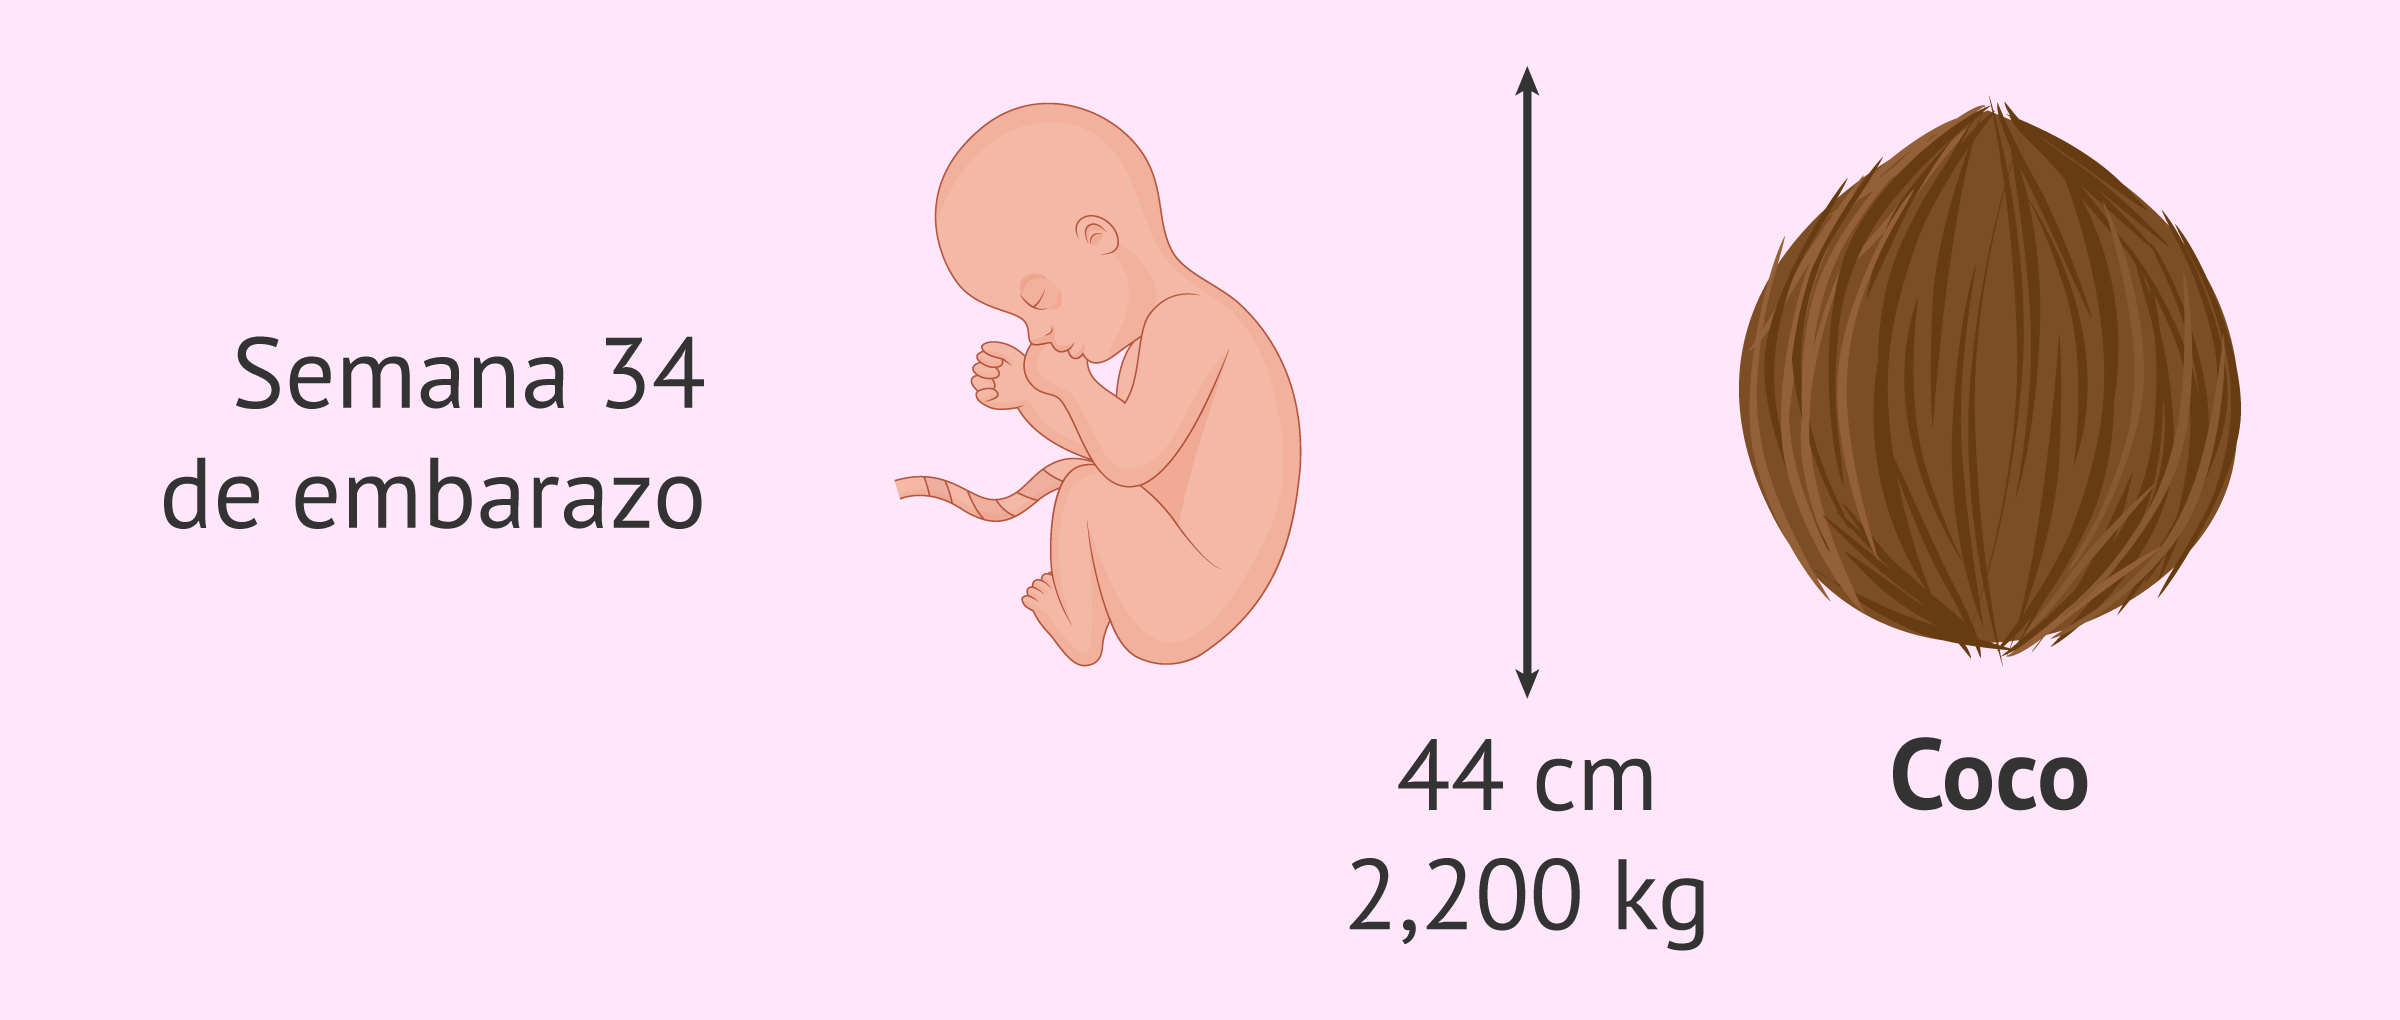 Medidas del bebé en la semana 34 de embarazo